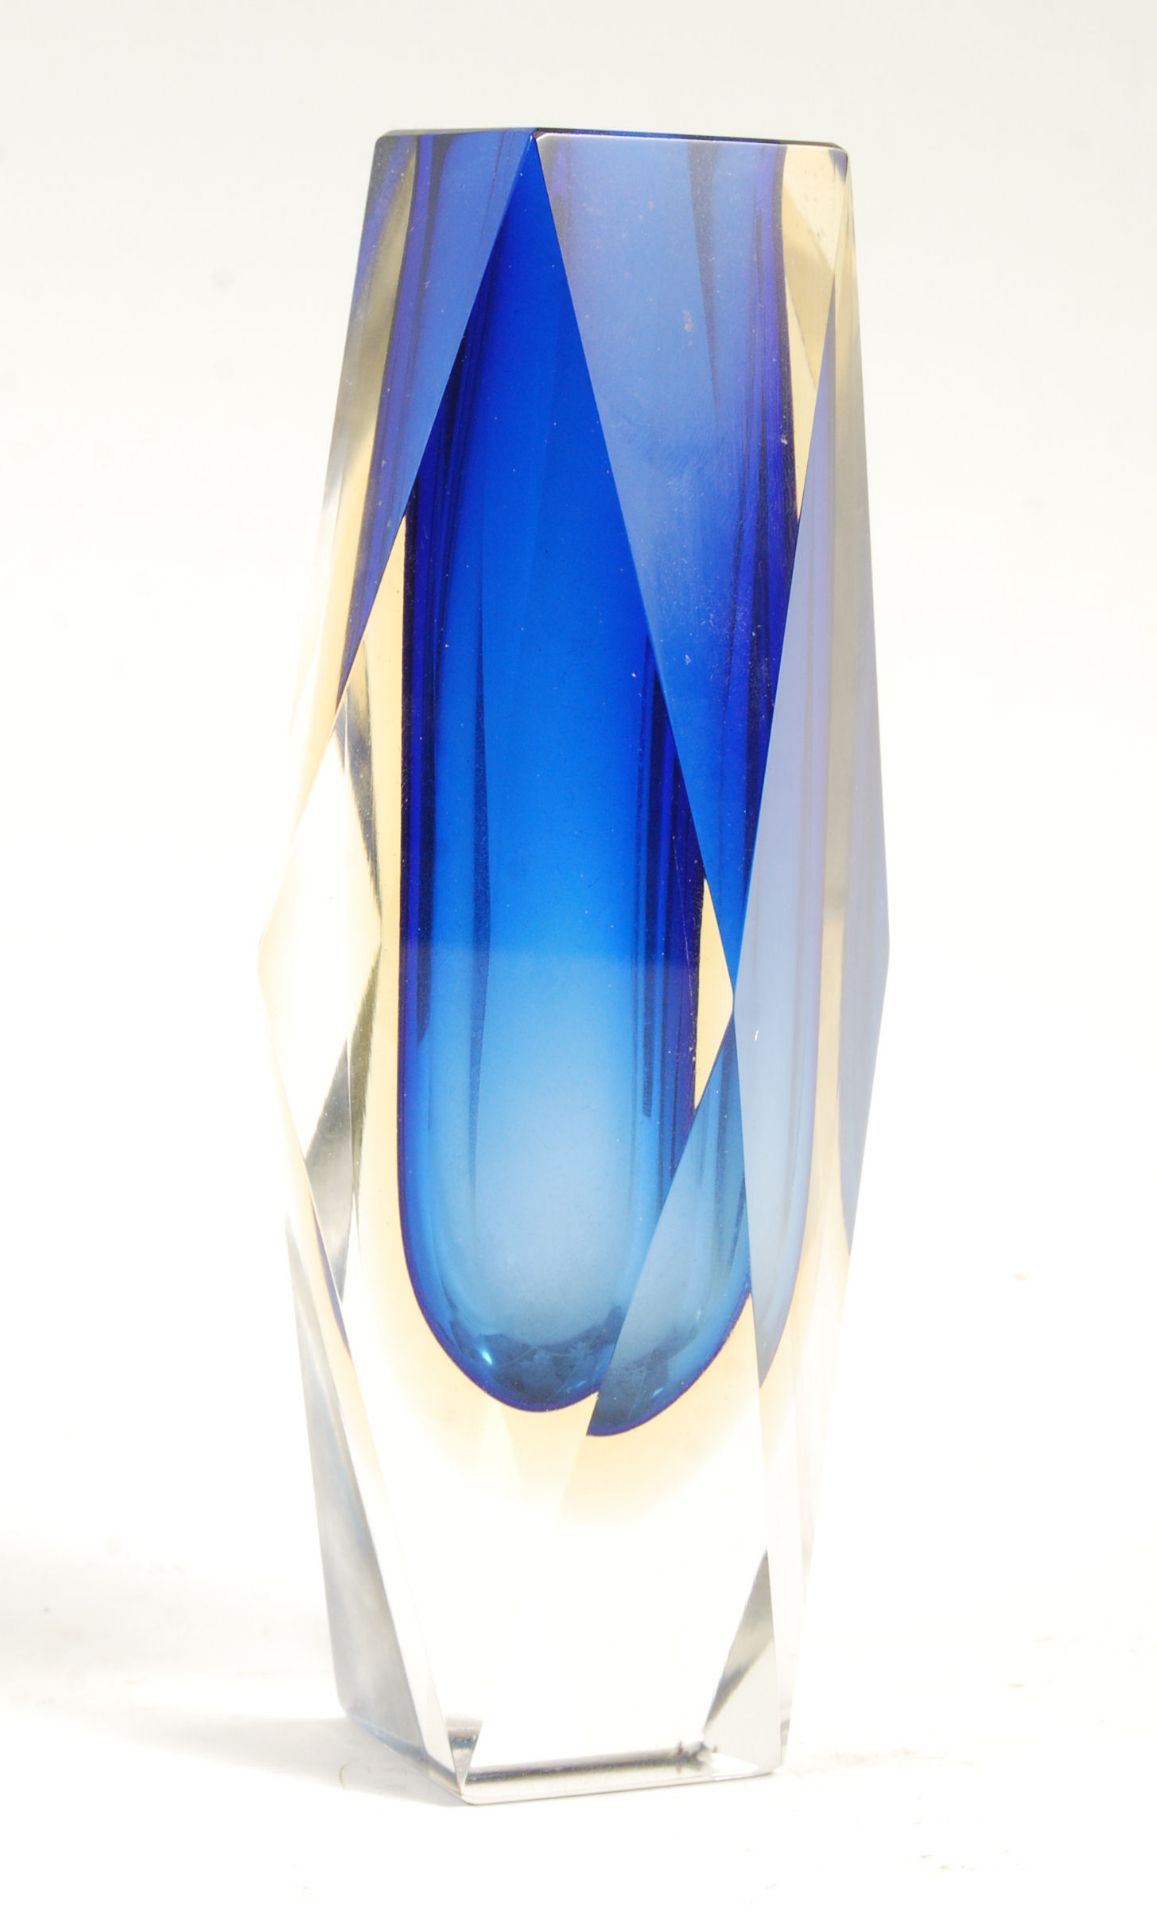 MANDRUZATTO MURANO VENEZIA STUDIO ART GLASS SOMMERSO - Image 3 of 5